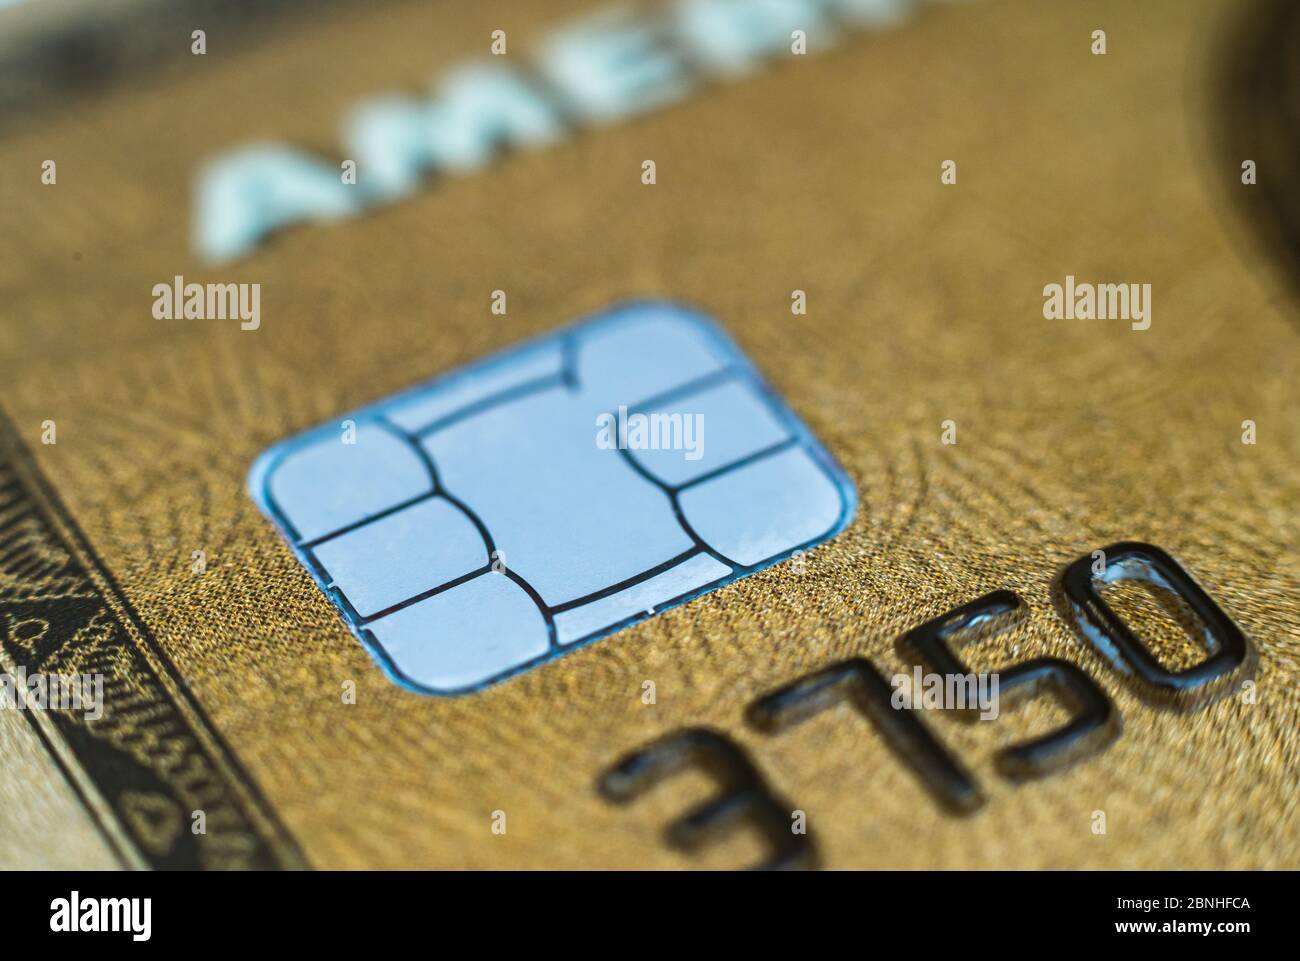 MONACO di BAVIERA, GERMANIA - 29 aprile 2020: Closeup di una carta di credito Amex. Carta oro American Express. La banca segnala i buoni risultati nel commercio della carta di credito. Foto Stock